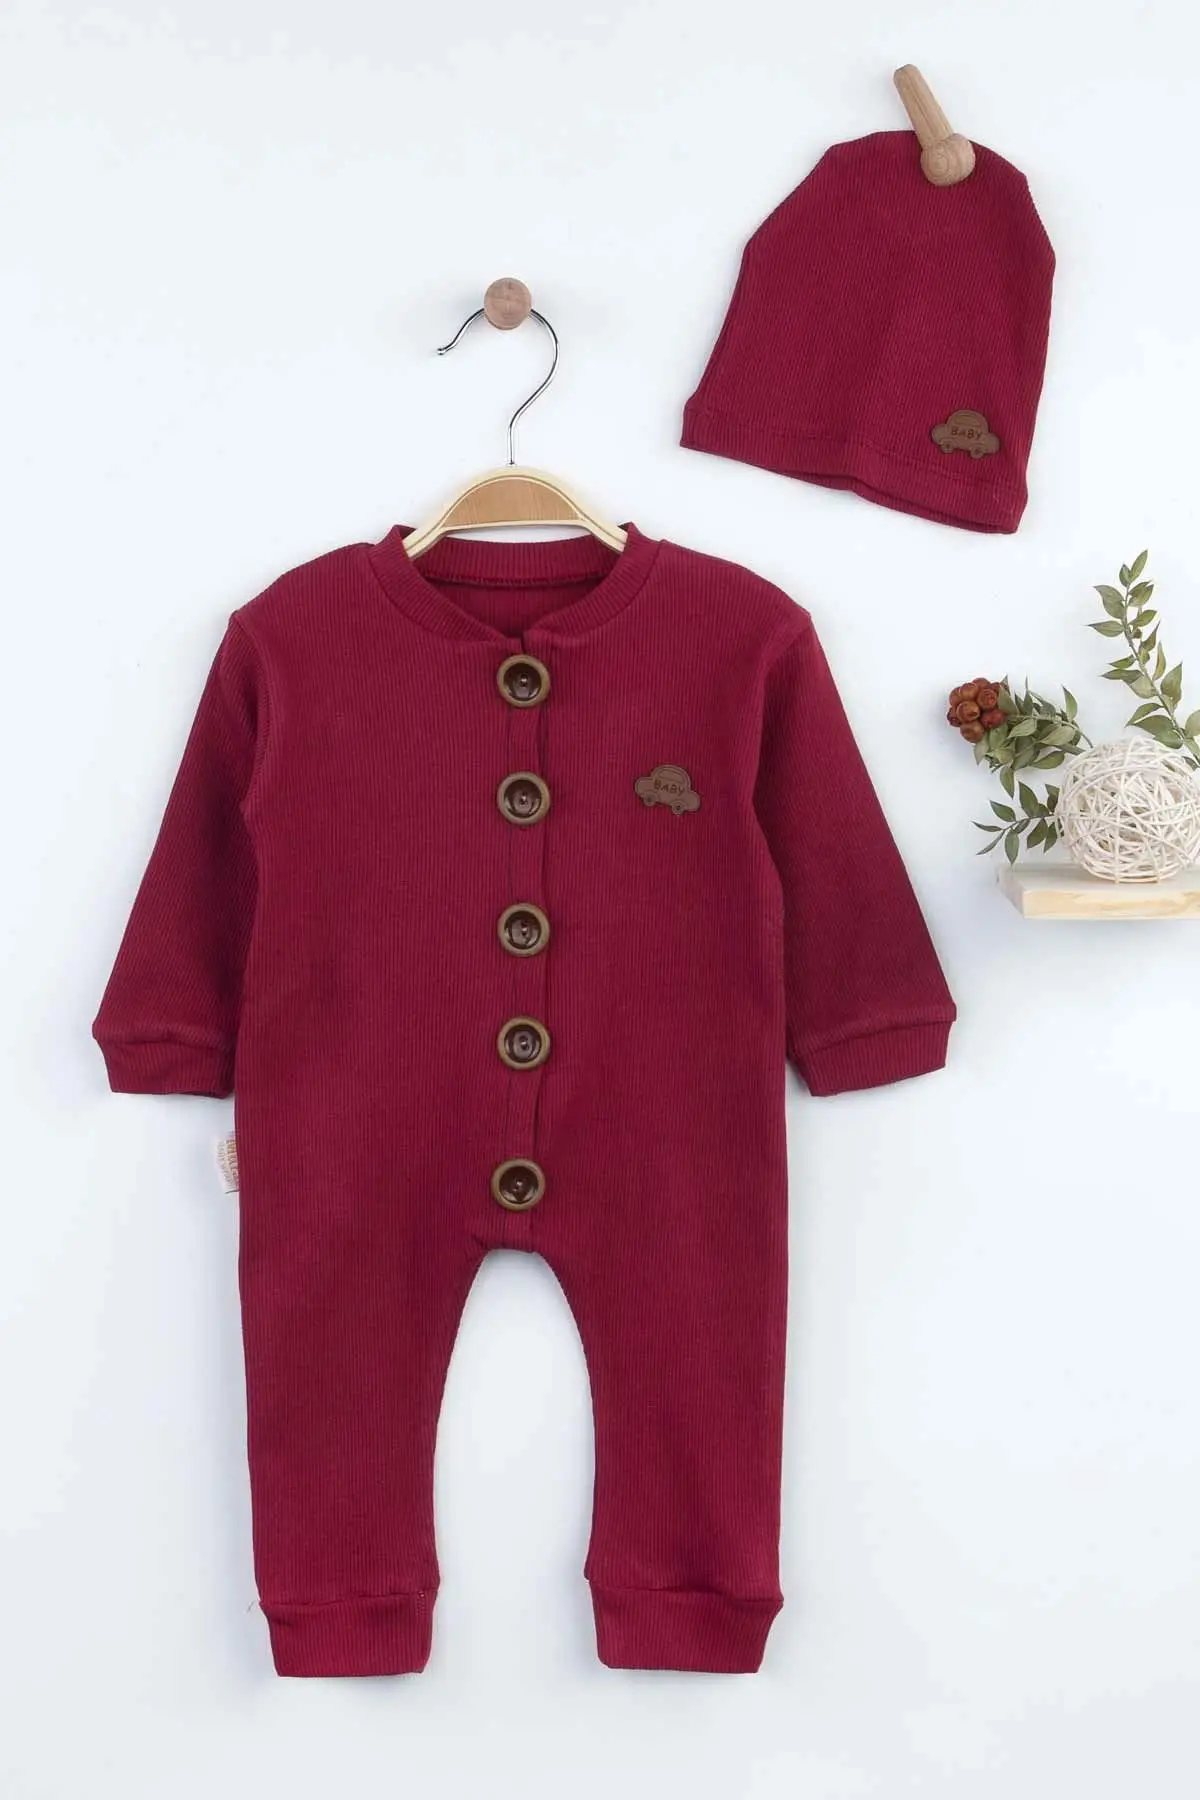 

Бордовые Комбинезоны для маленьких мальчиков, мода 2021, новый сезон, стильная одежда для младенцев, наряд, хлопковое удобное нижнее белье для мальчиков, бордовый, красный